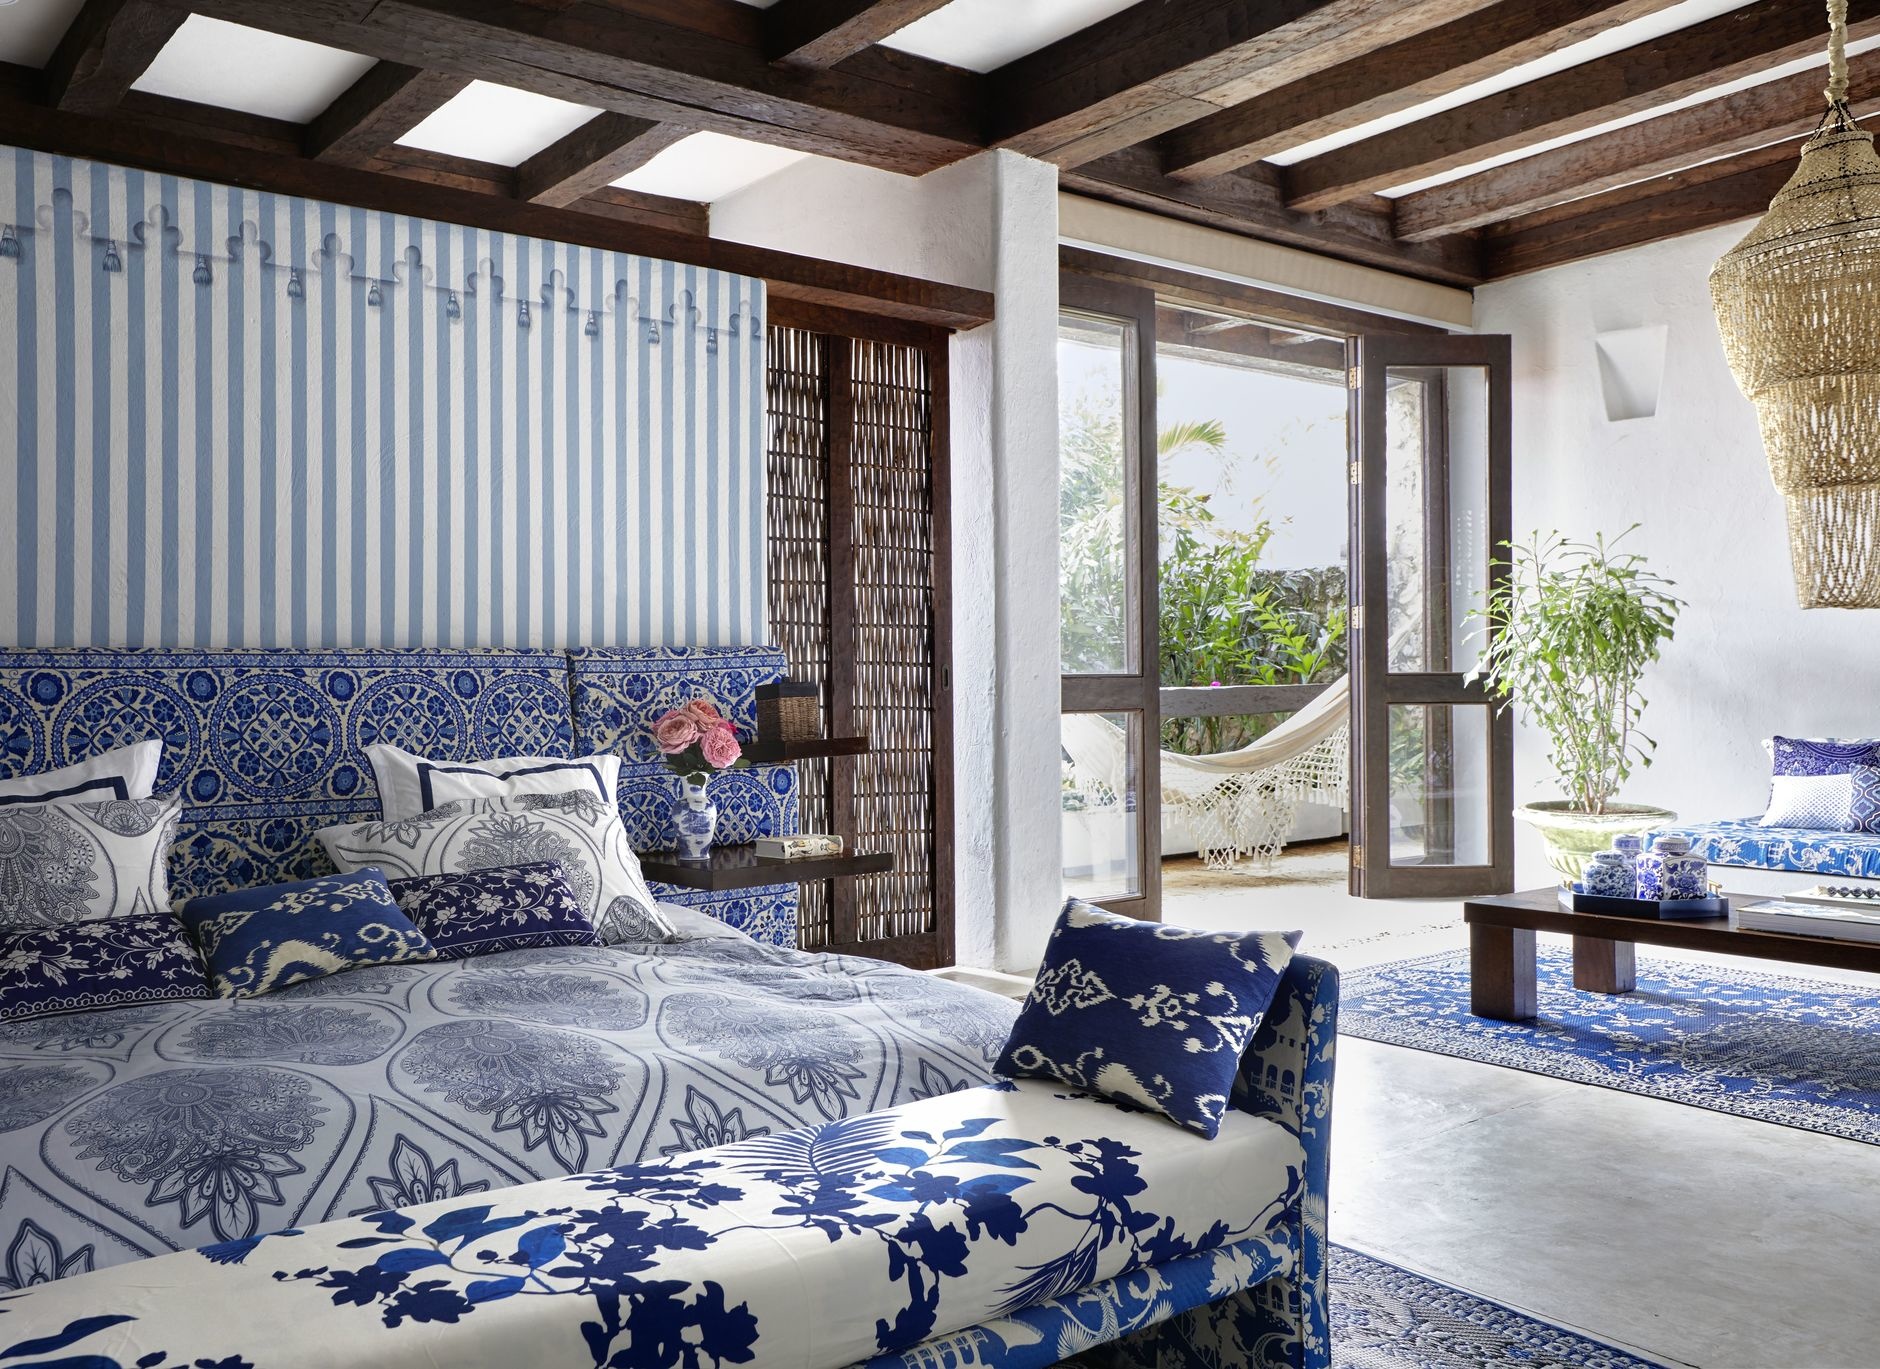 Xanh lam - trắng - nâu gỗ: Bộ ba này khi kết hợp cùng nhau tạo nên một phòng ngủ hoàn hảo theo phong cách Địa Trung Hải.